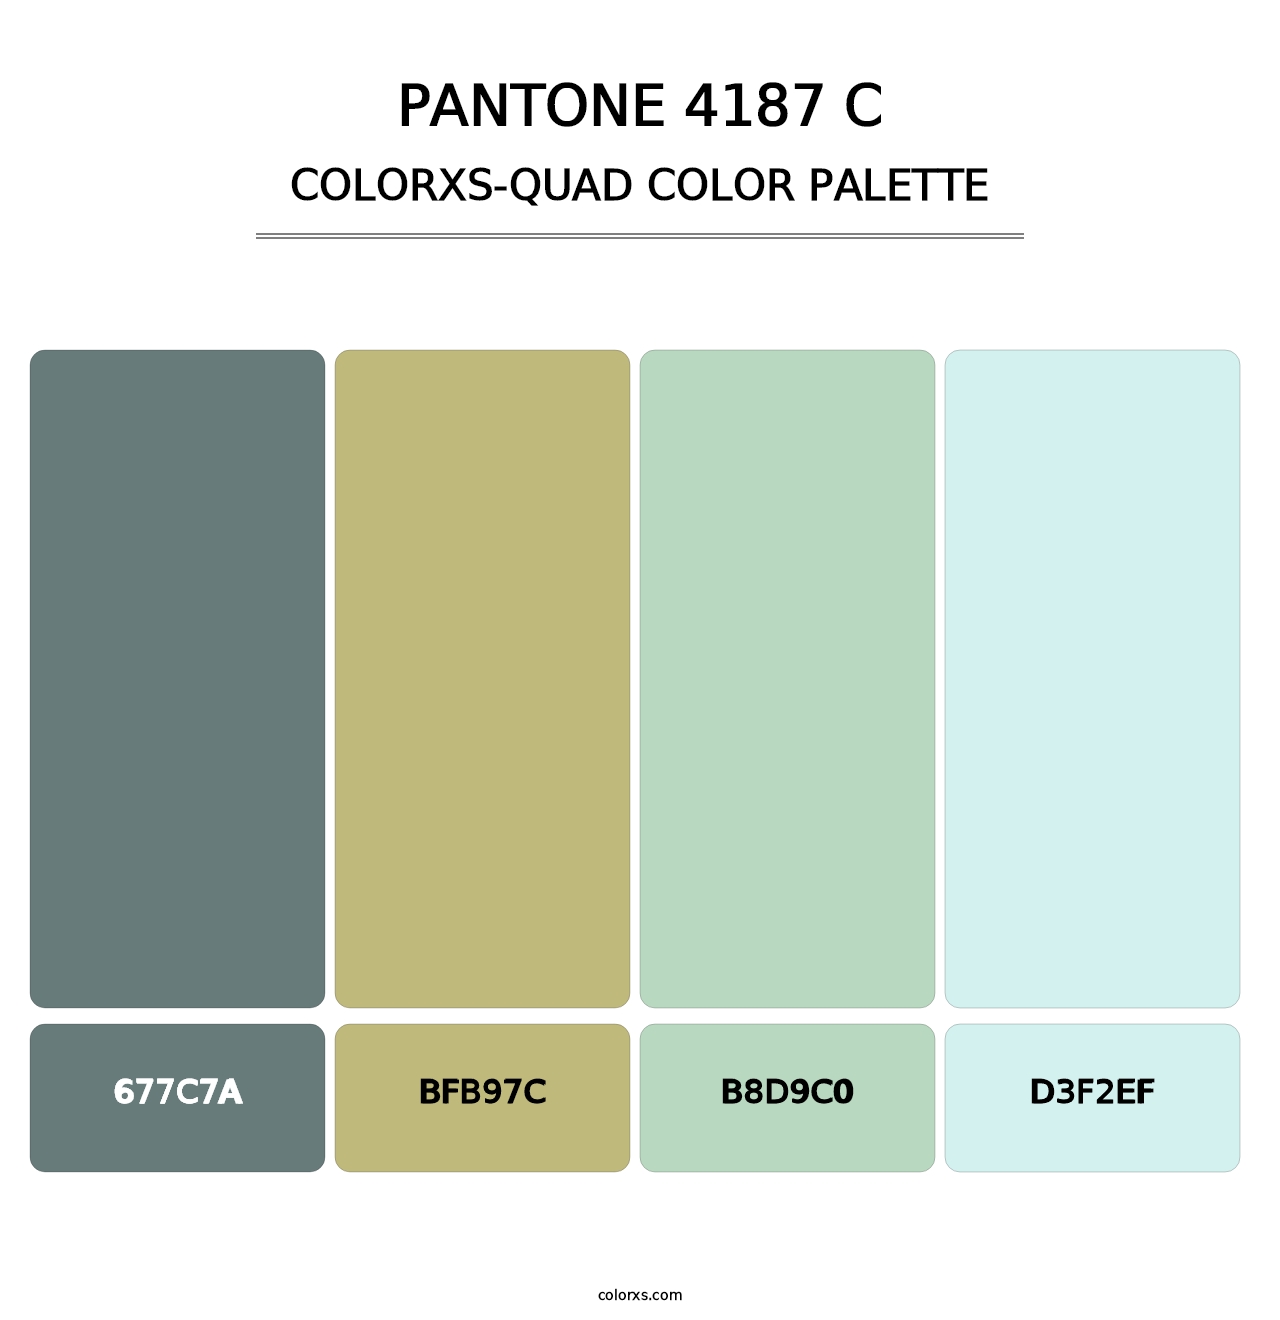 PANTONE 4187 C - Colorxs Quad Palette